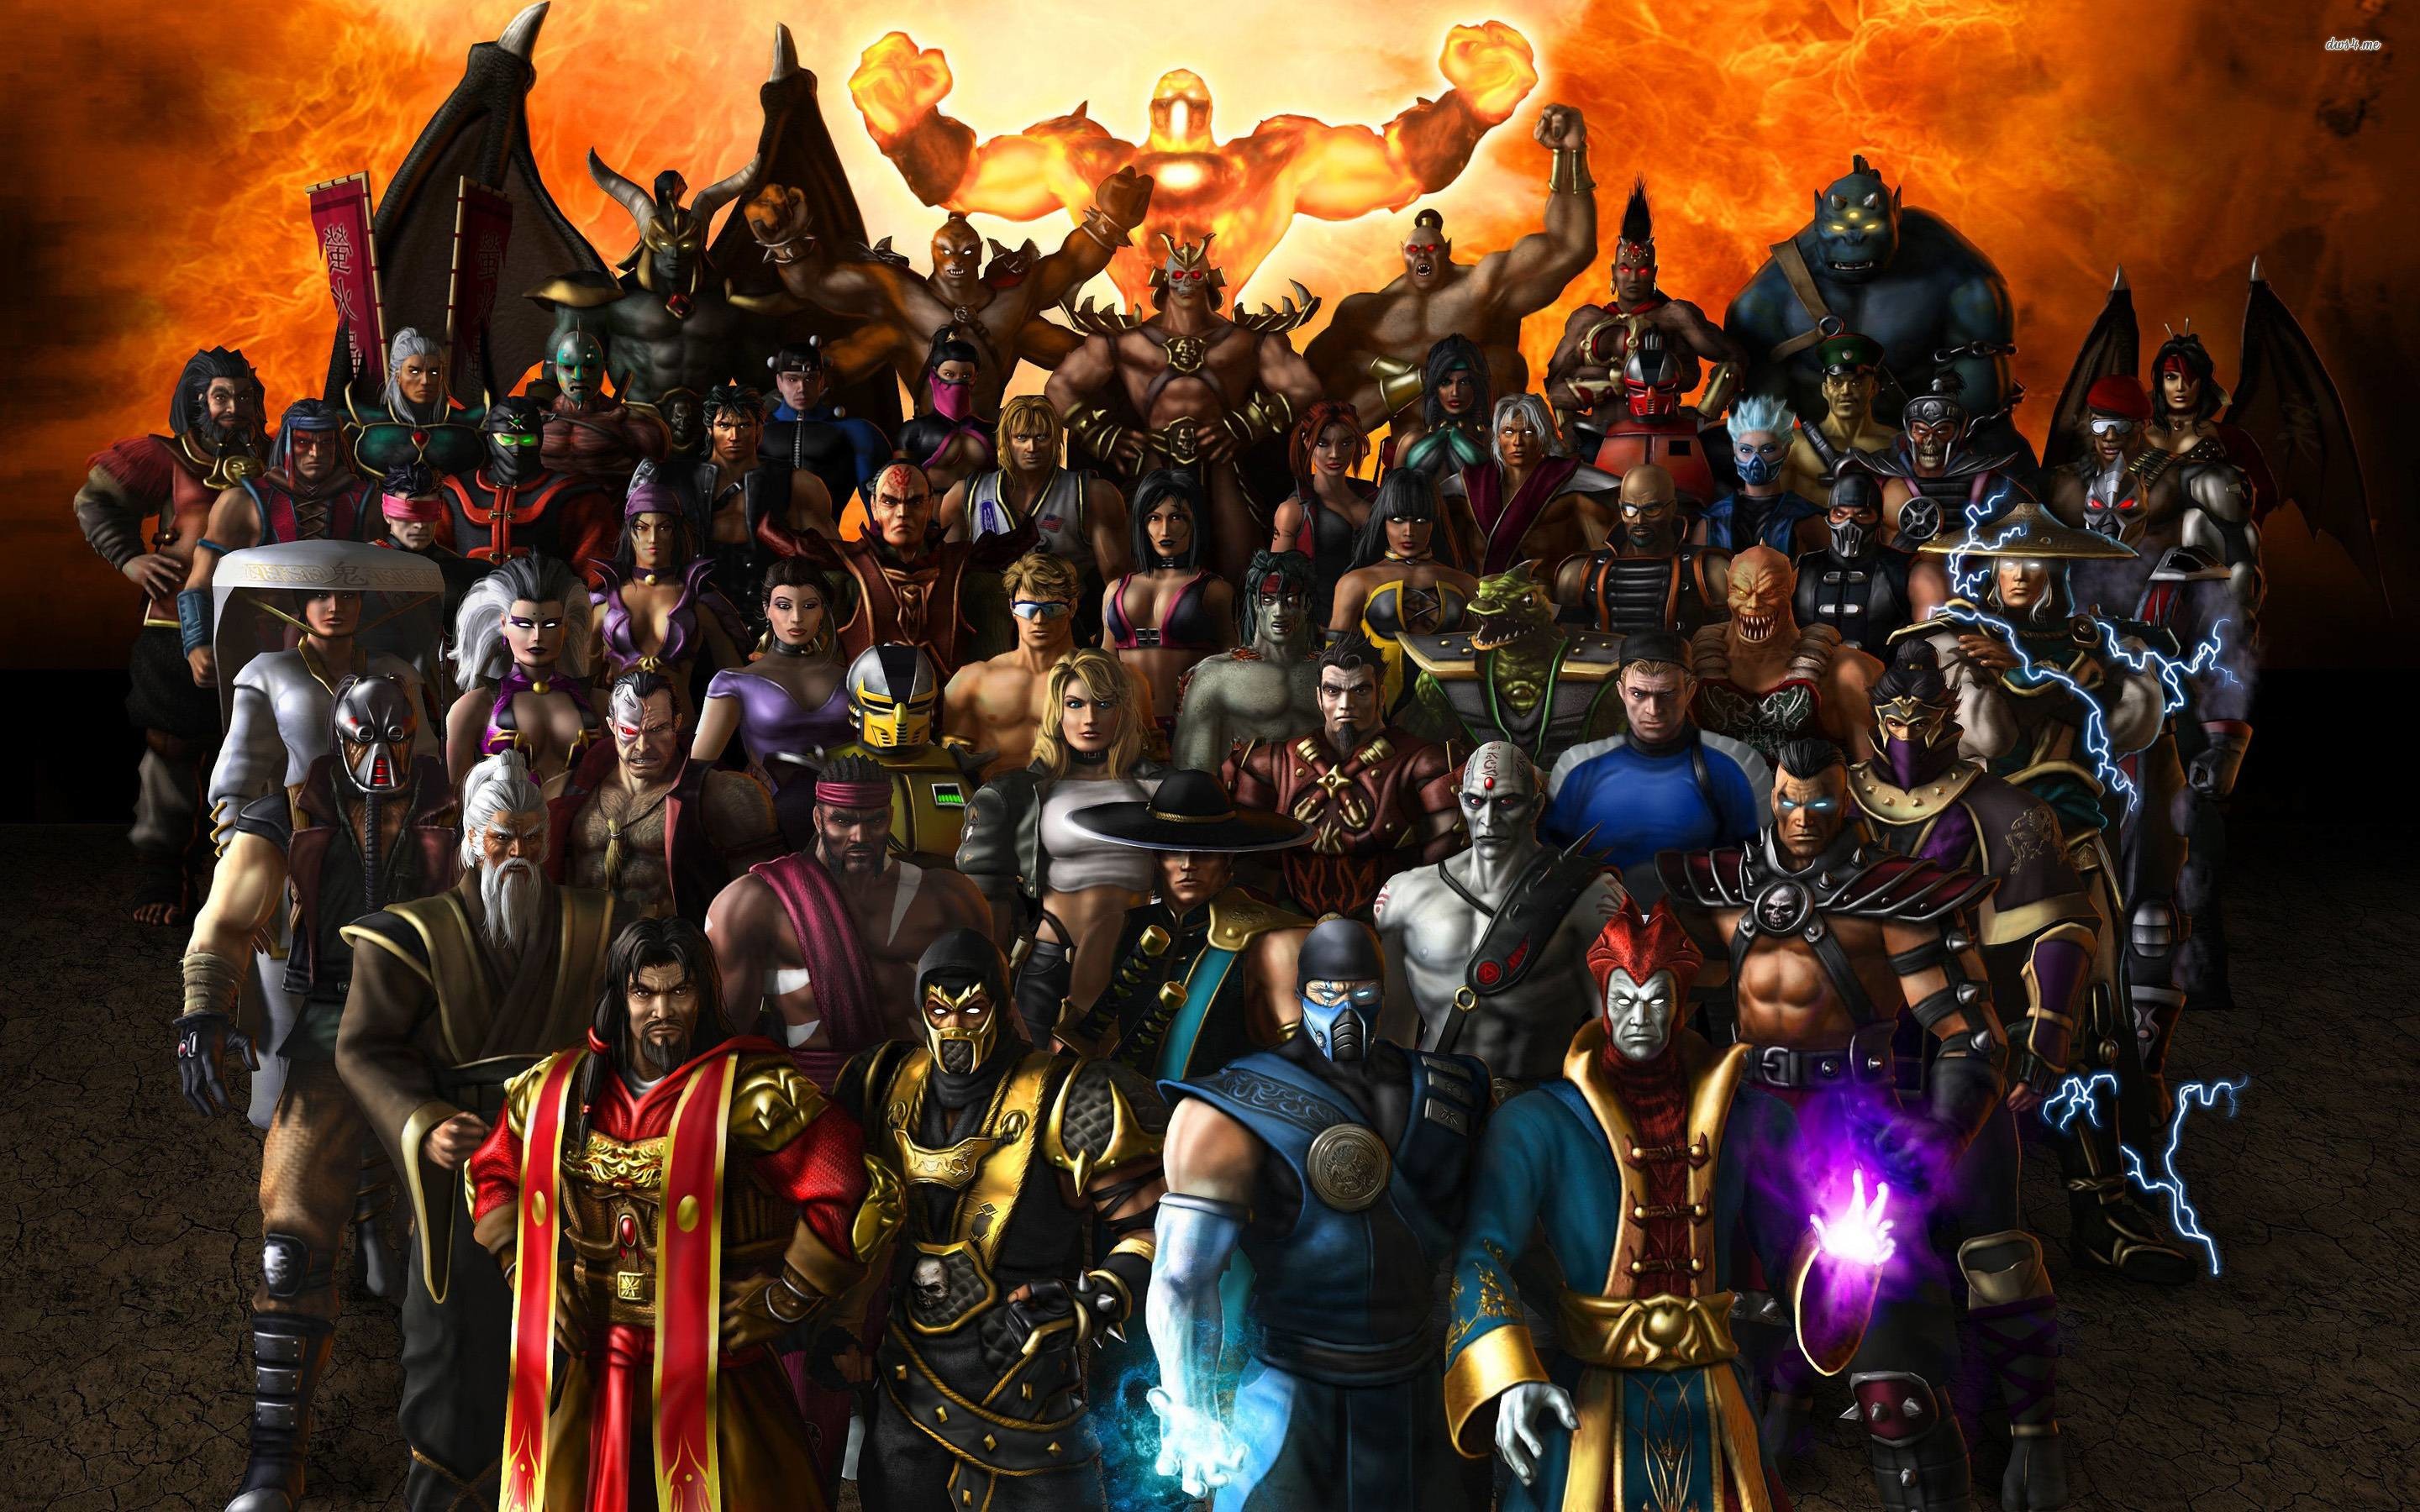 2880x1800 Mortal Kombat characters wallpaper - Game wallpapers - #